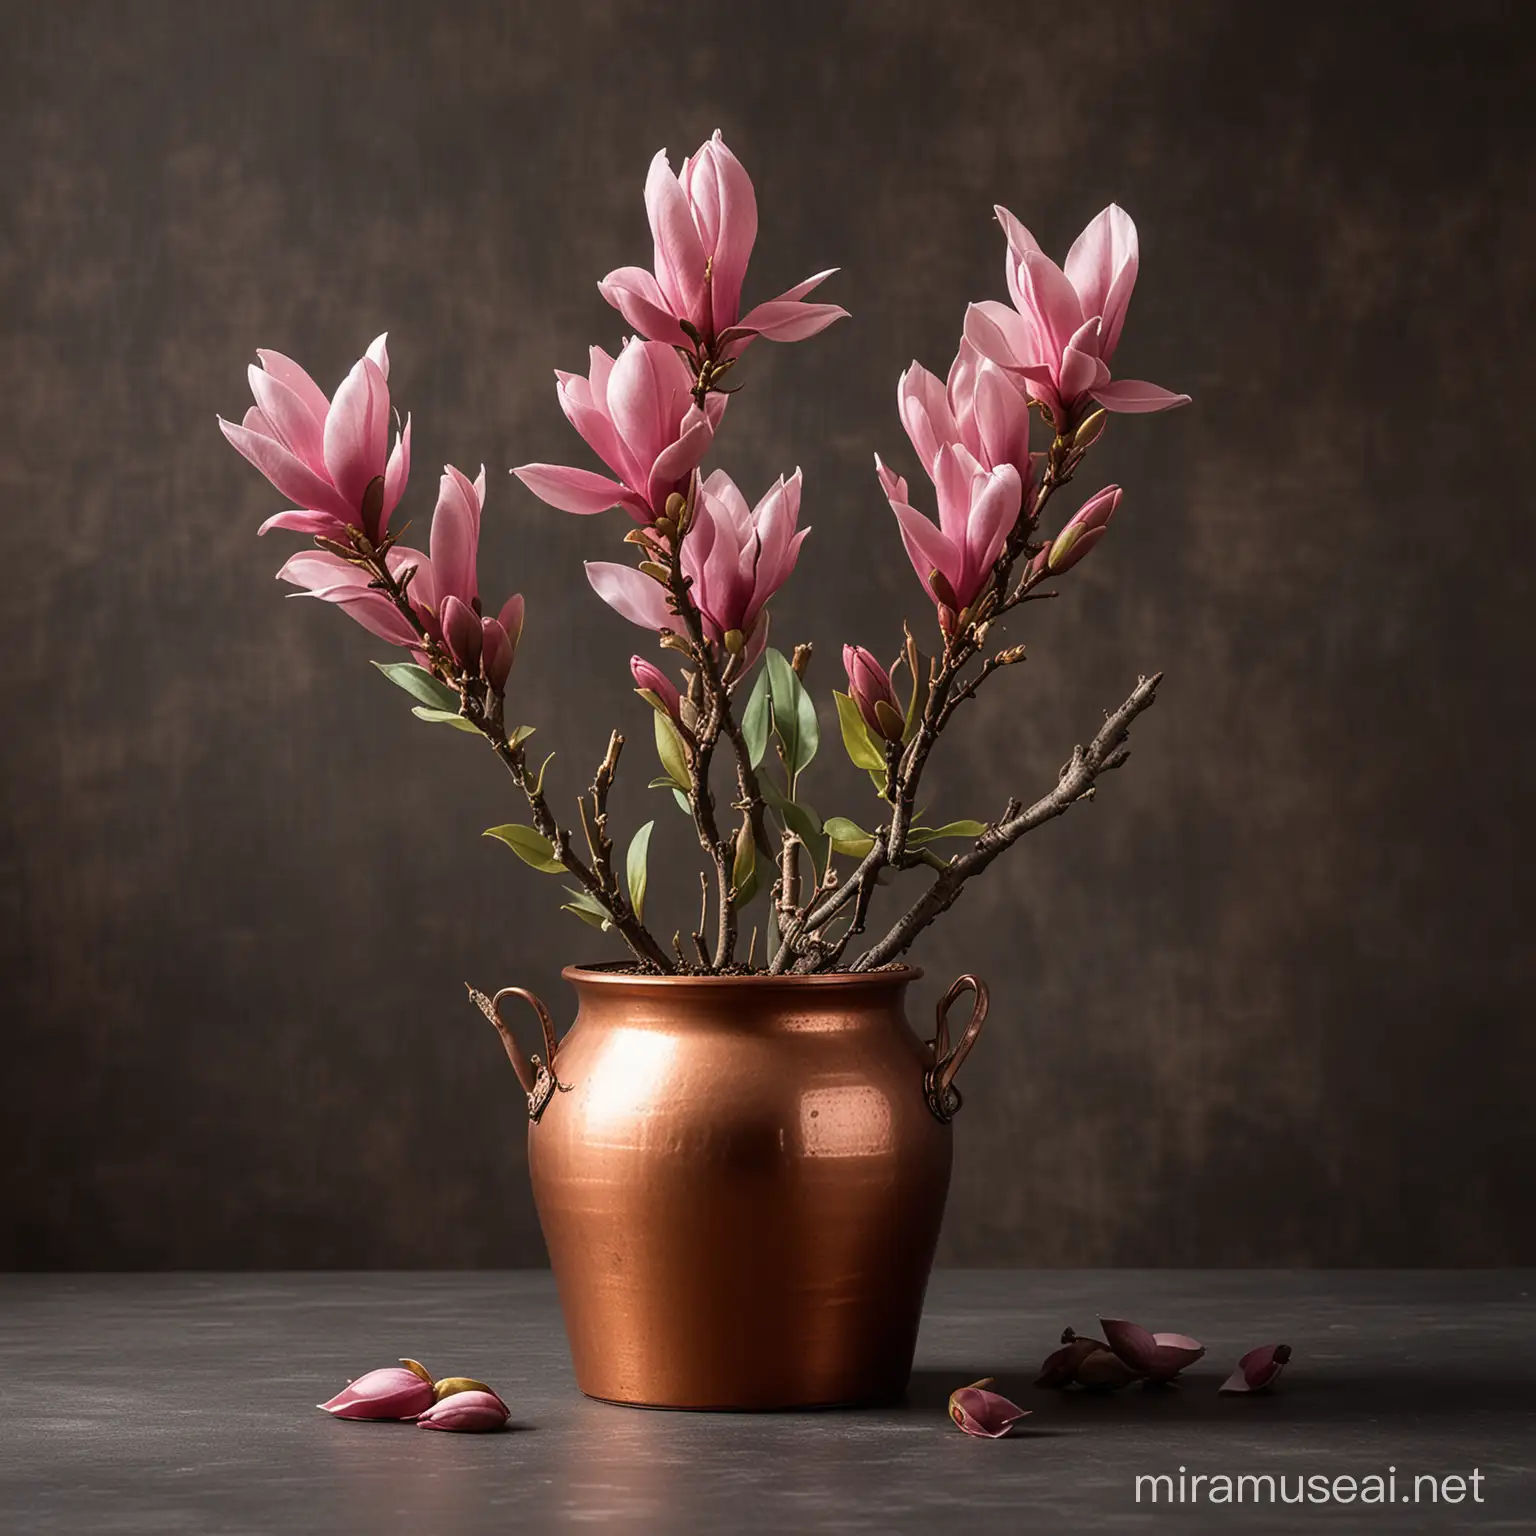 Copper Pot with Magnolia Flower Buds Elegant Floral Still Life